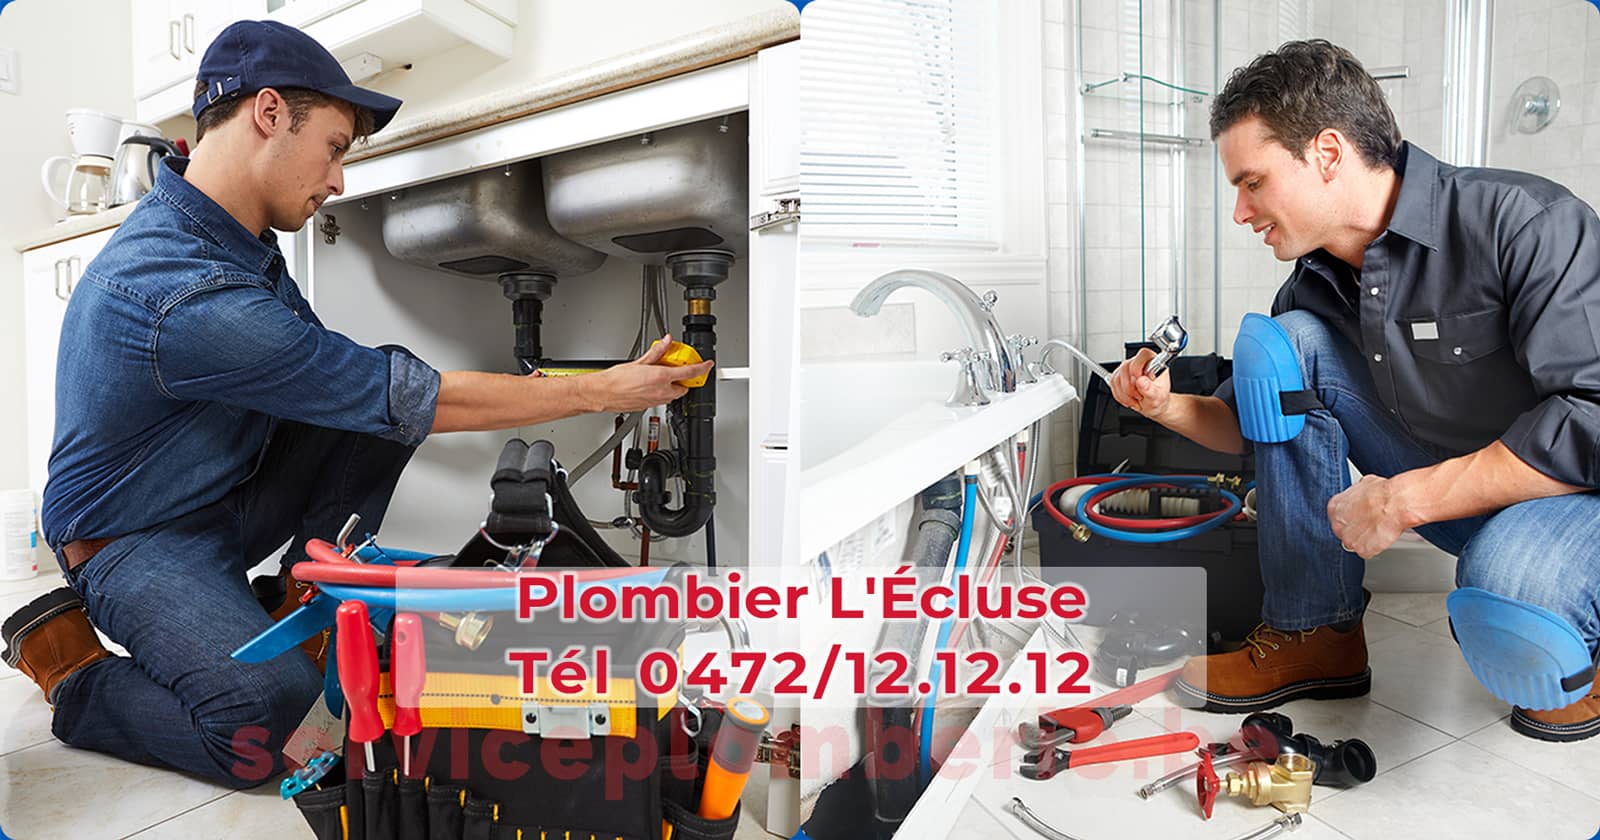 Plombier L'Écluse Agréé Professionnel Service Plomberie Tél 0472/12.12.12